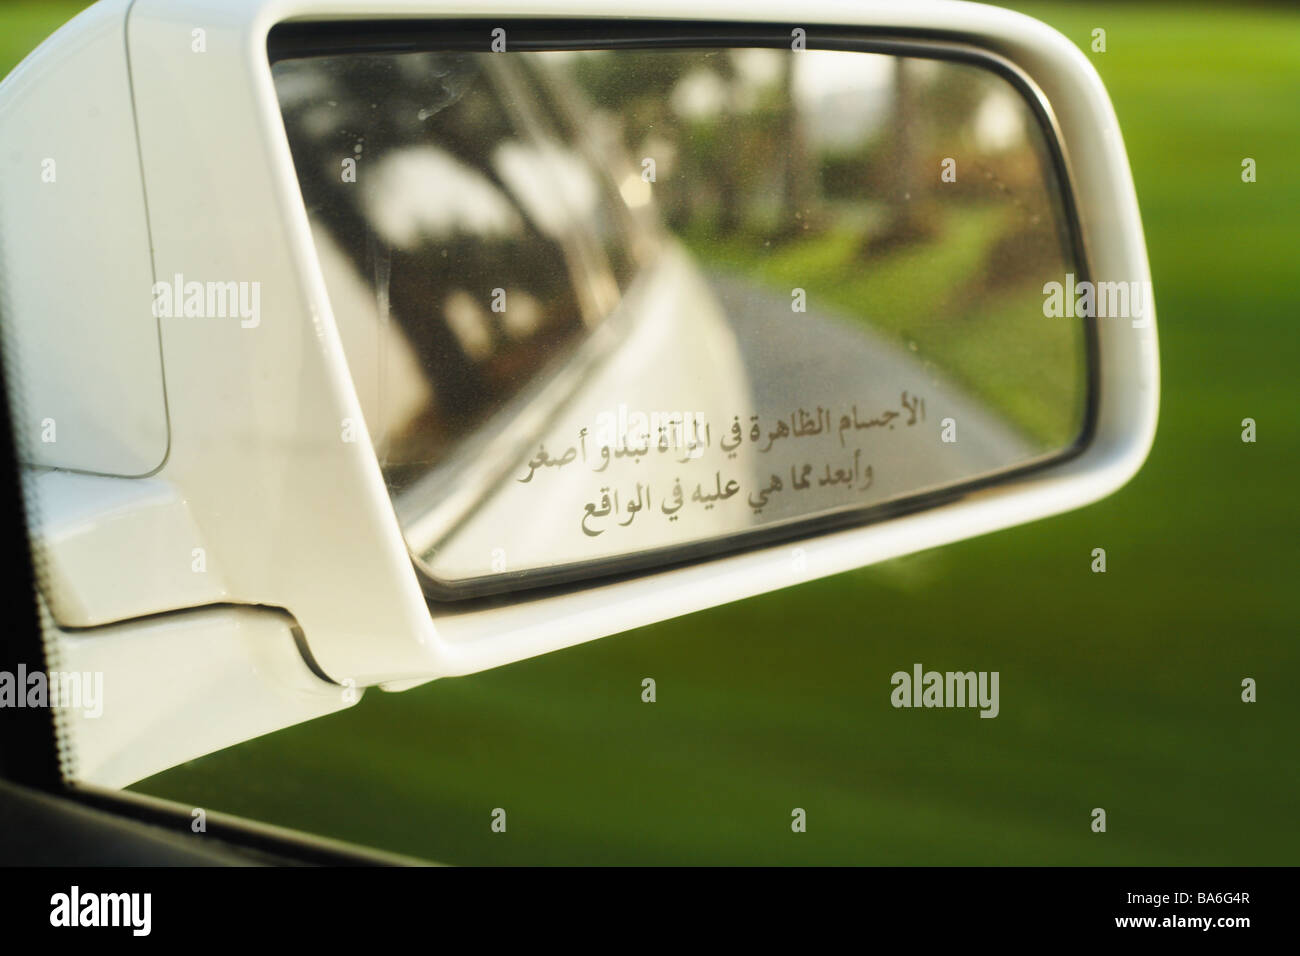 https://c8.alamy.com/compde/ba6g4r/auto-detail-seitenspiegel-streicheln-arabisch-vereinigte-arabische-emirate-dubai-fahrzeug-aussen-spiegel-reflexion-schreiben-schreiben-arabisch-ba6g4r.jpg